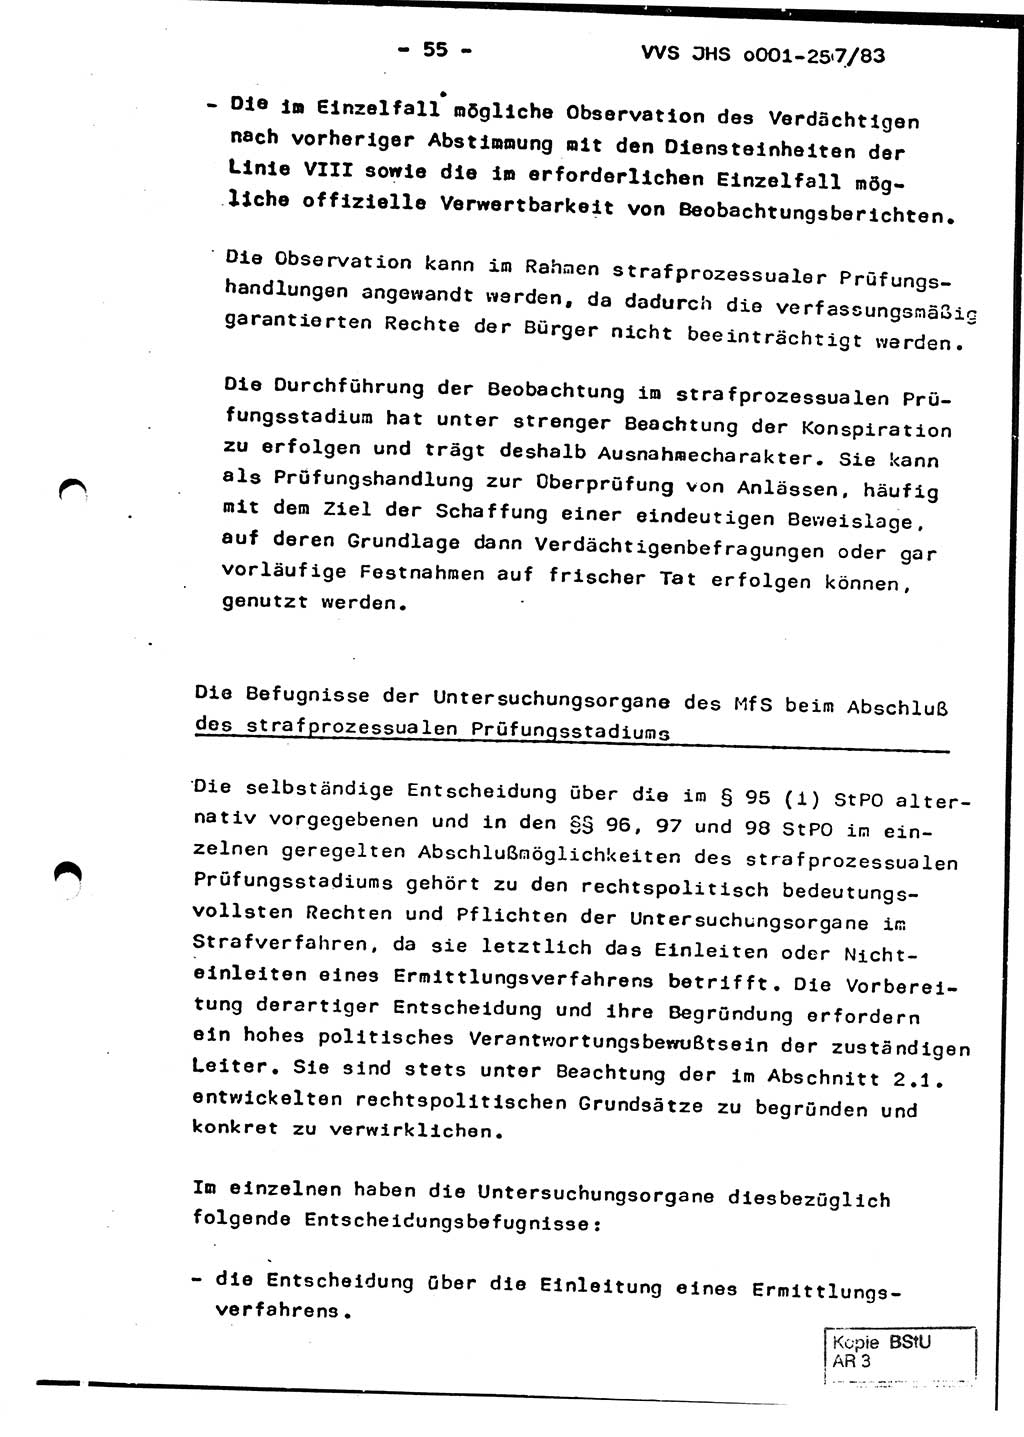 Dissertation, Oberst Helmut Lubas (BV Mdg.), Oberstleutnant Manfred Eschberger (HA IX), Oberleutnant Hans-Jürgen Ludwig (JHS), Ministerium für Staatssicherheit (MfS) [Deutsche Demokratische Republik (DDR)], Juristische Hochschule (JHS), Vertrauliche Verschlußsache (VVS) o001-257/83, Potsdam 1983, Seite 55 (Diss. MfS DDR JHS VVS o001-257/83 1983, S. 55)